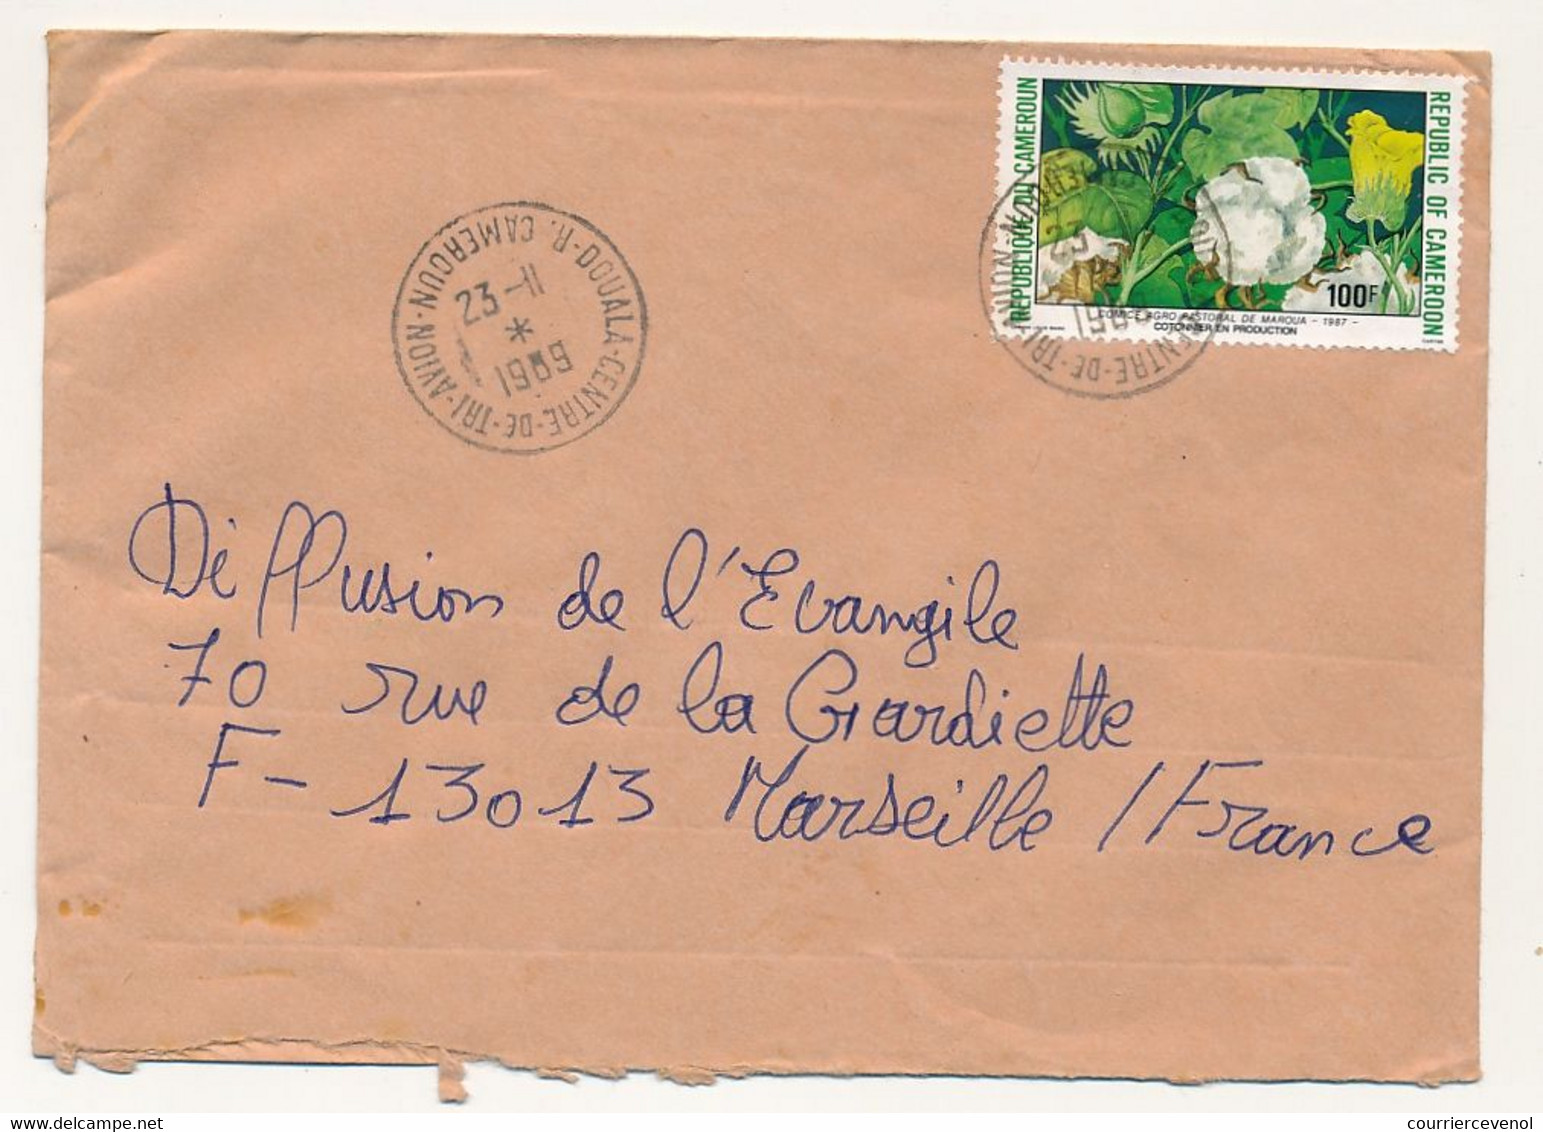 CAMEROUN => Enveloppe Douala Centre De Tri Avion Pour France, Affr. 100F Cotonnier - 23/11/1969 - Kameroen (1960-...)